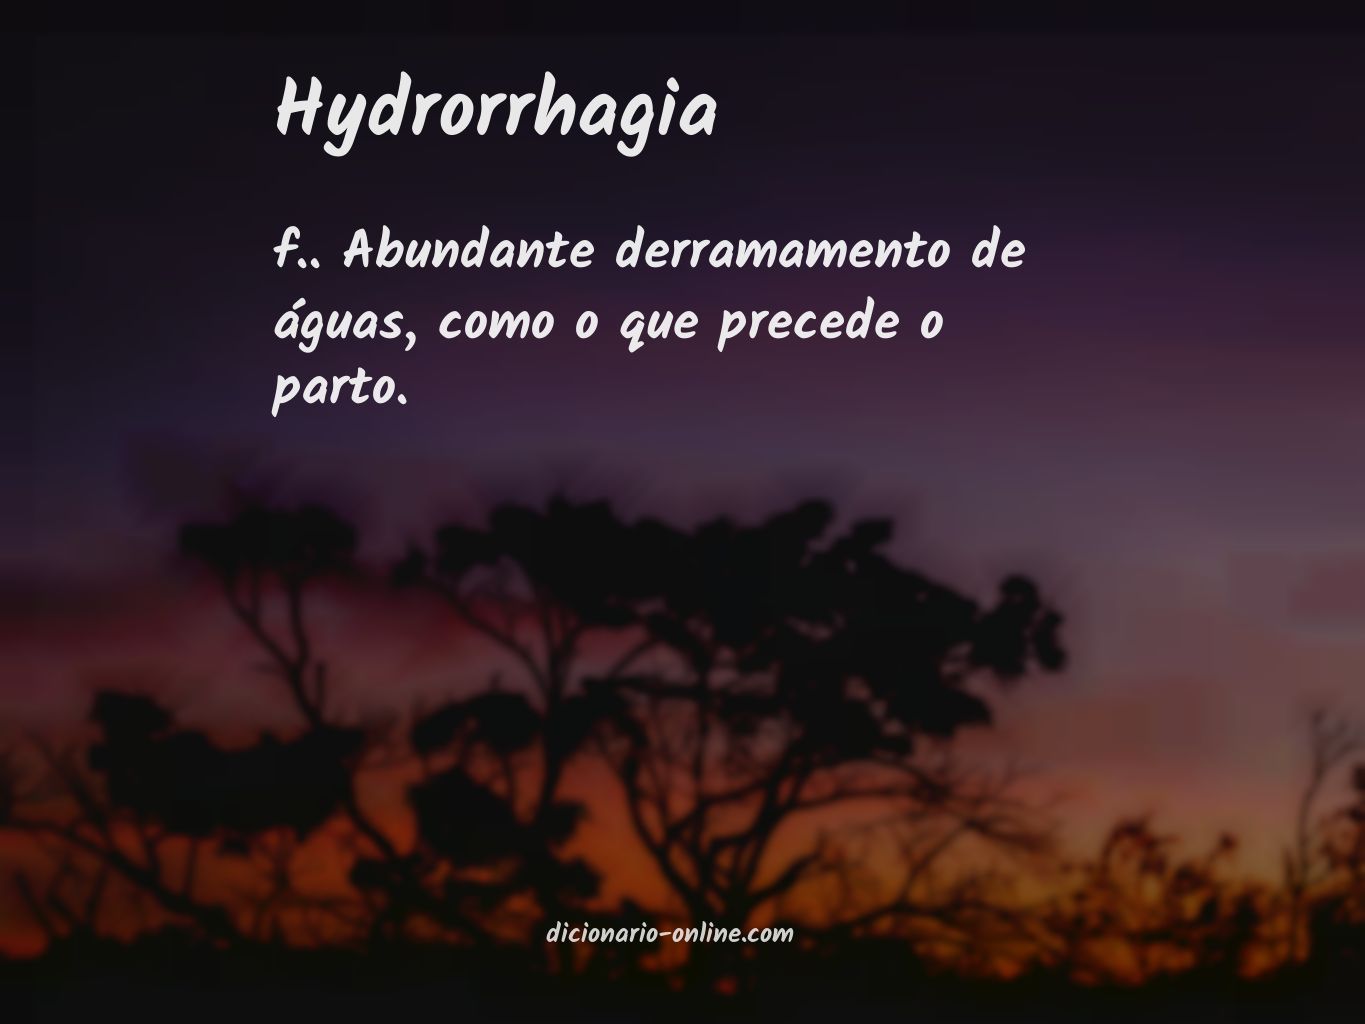 Significado de hydrorrhagia